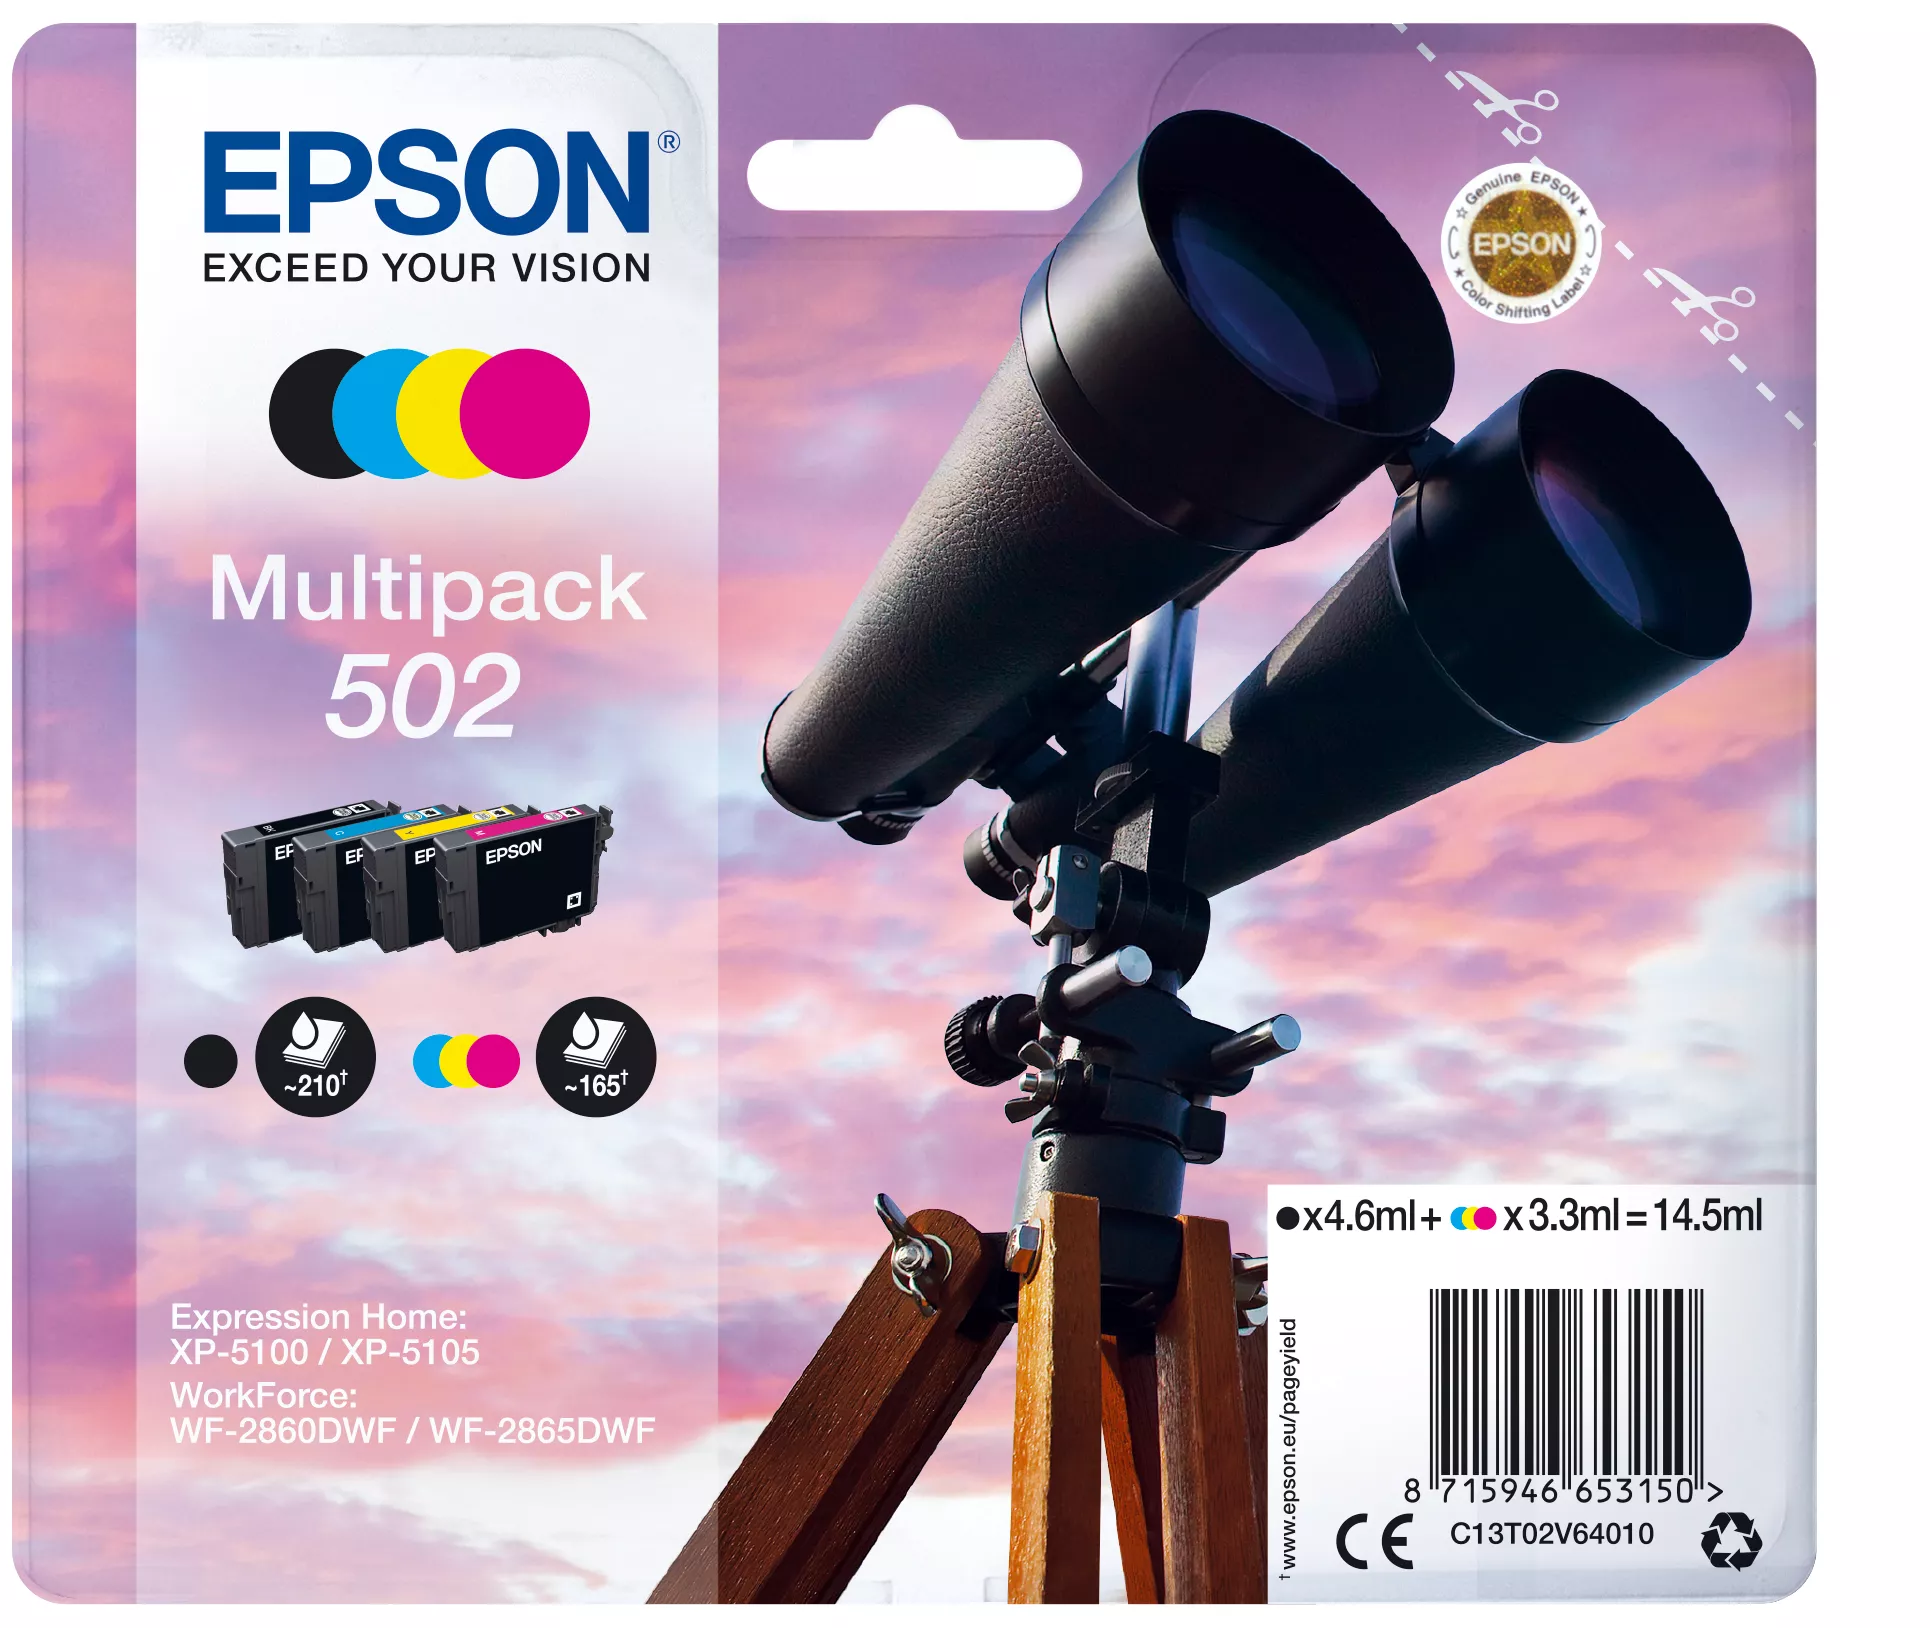 Vente EPSON Multipack 4-colours 502 Ink SEC au meilleur prix